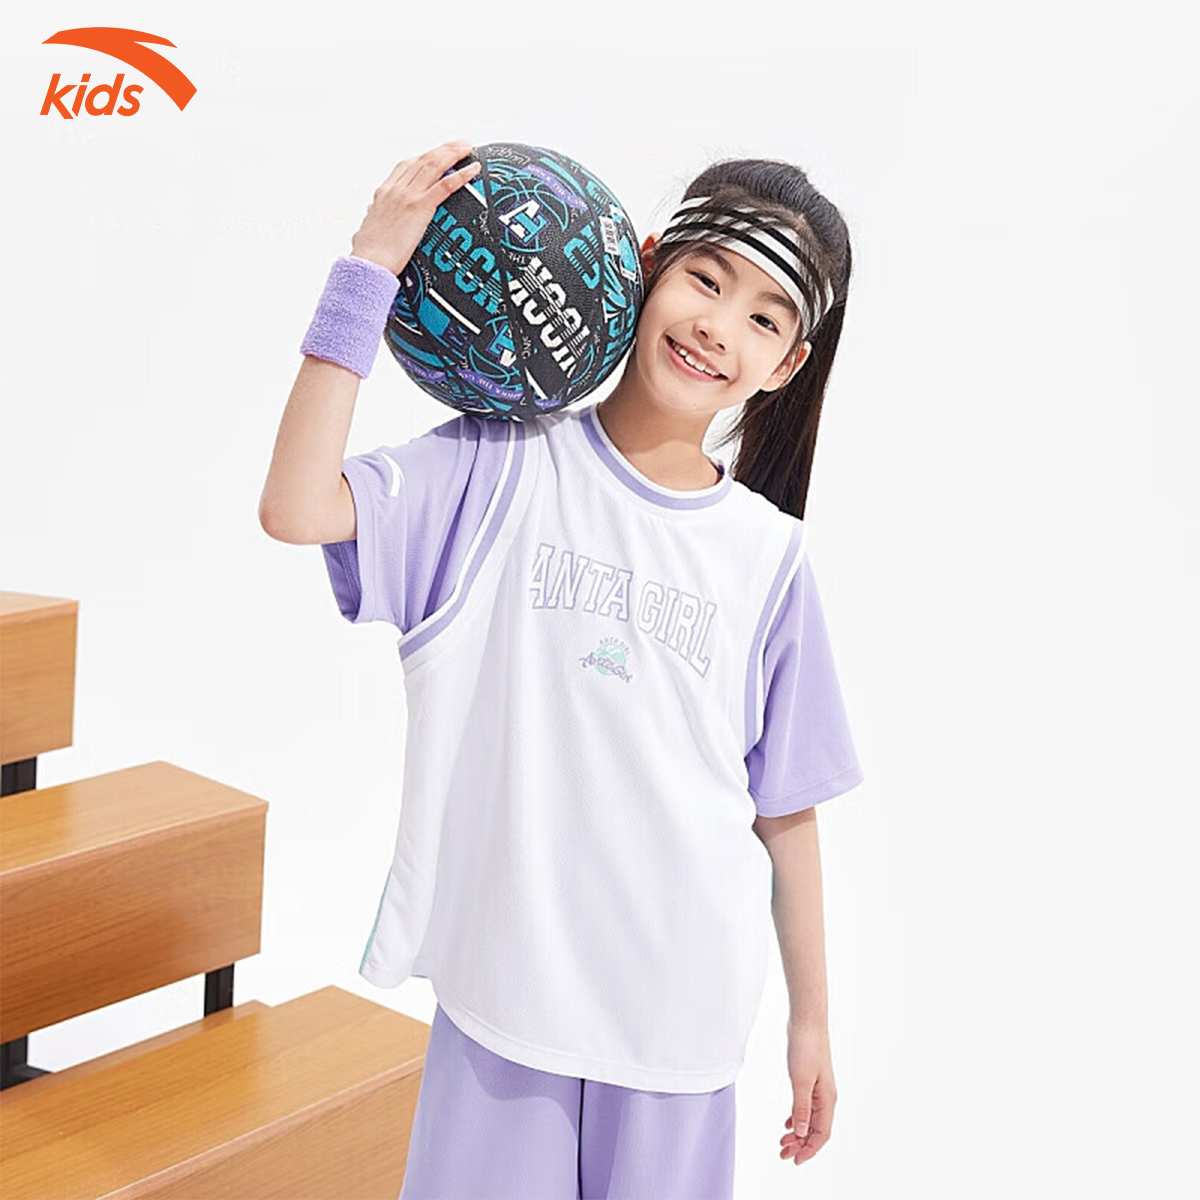 Áo phông thể thao bé gái Anta Kids dòng bóng rổ, vải cotton, thoáng khí W362328142